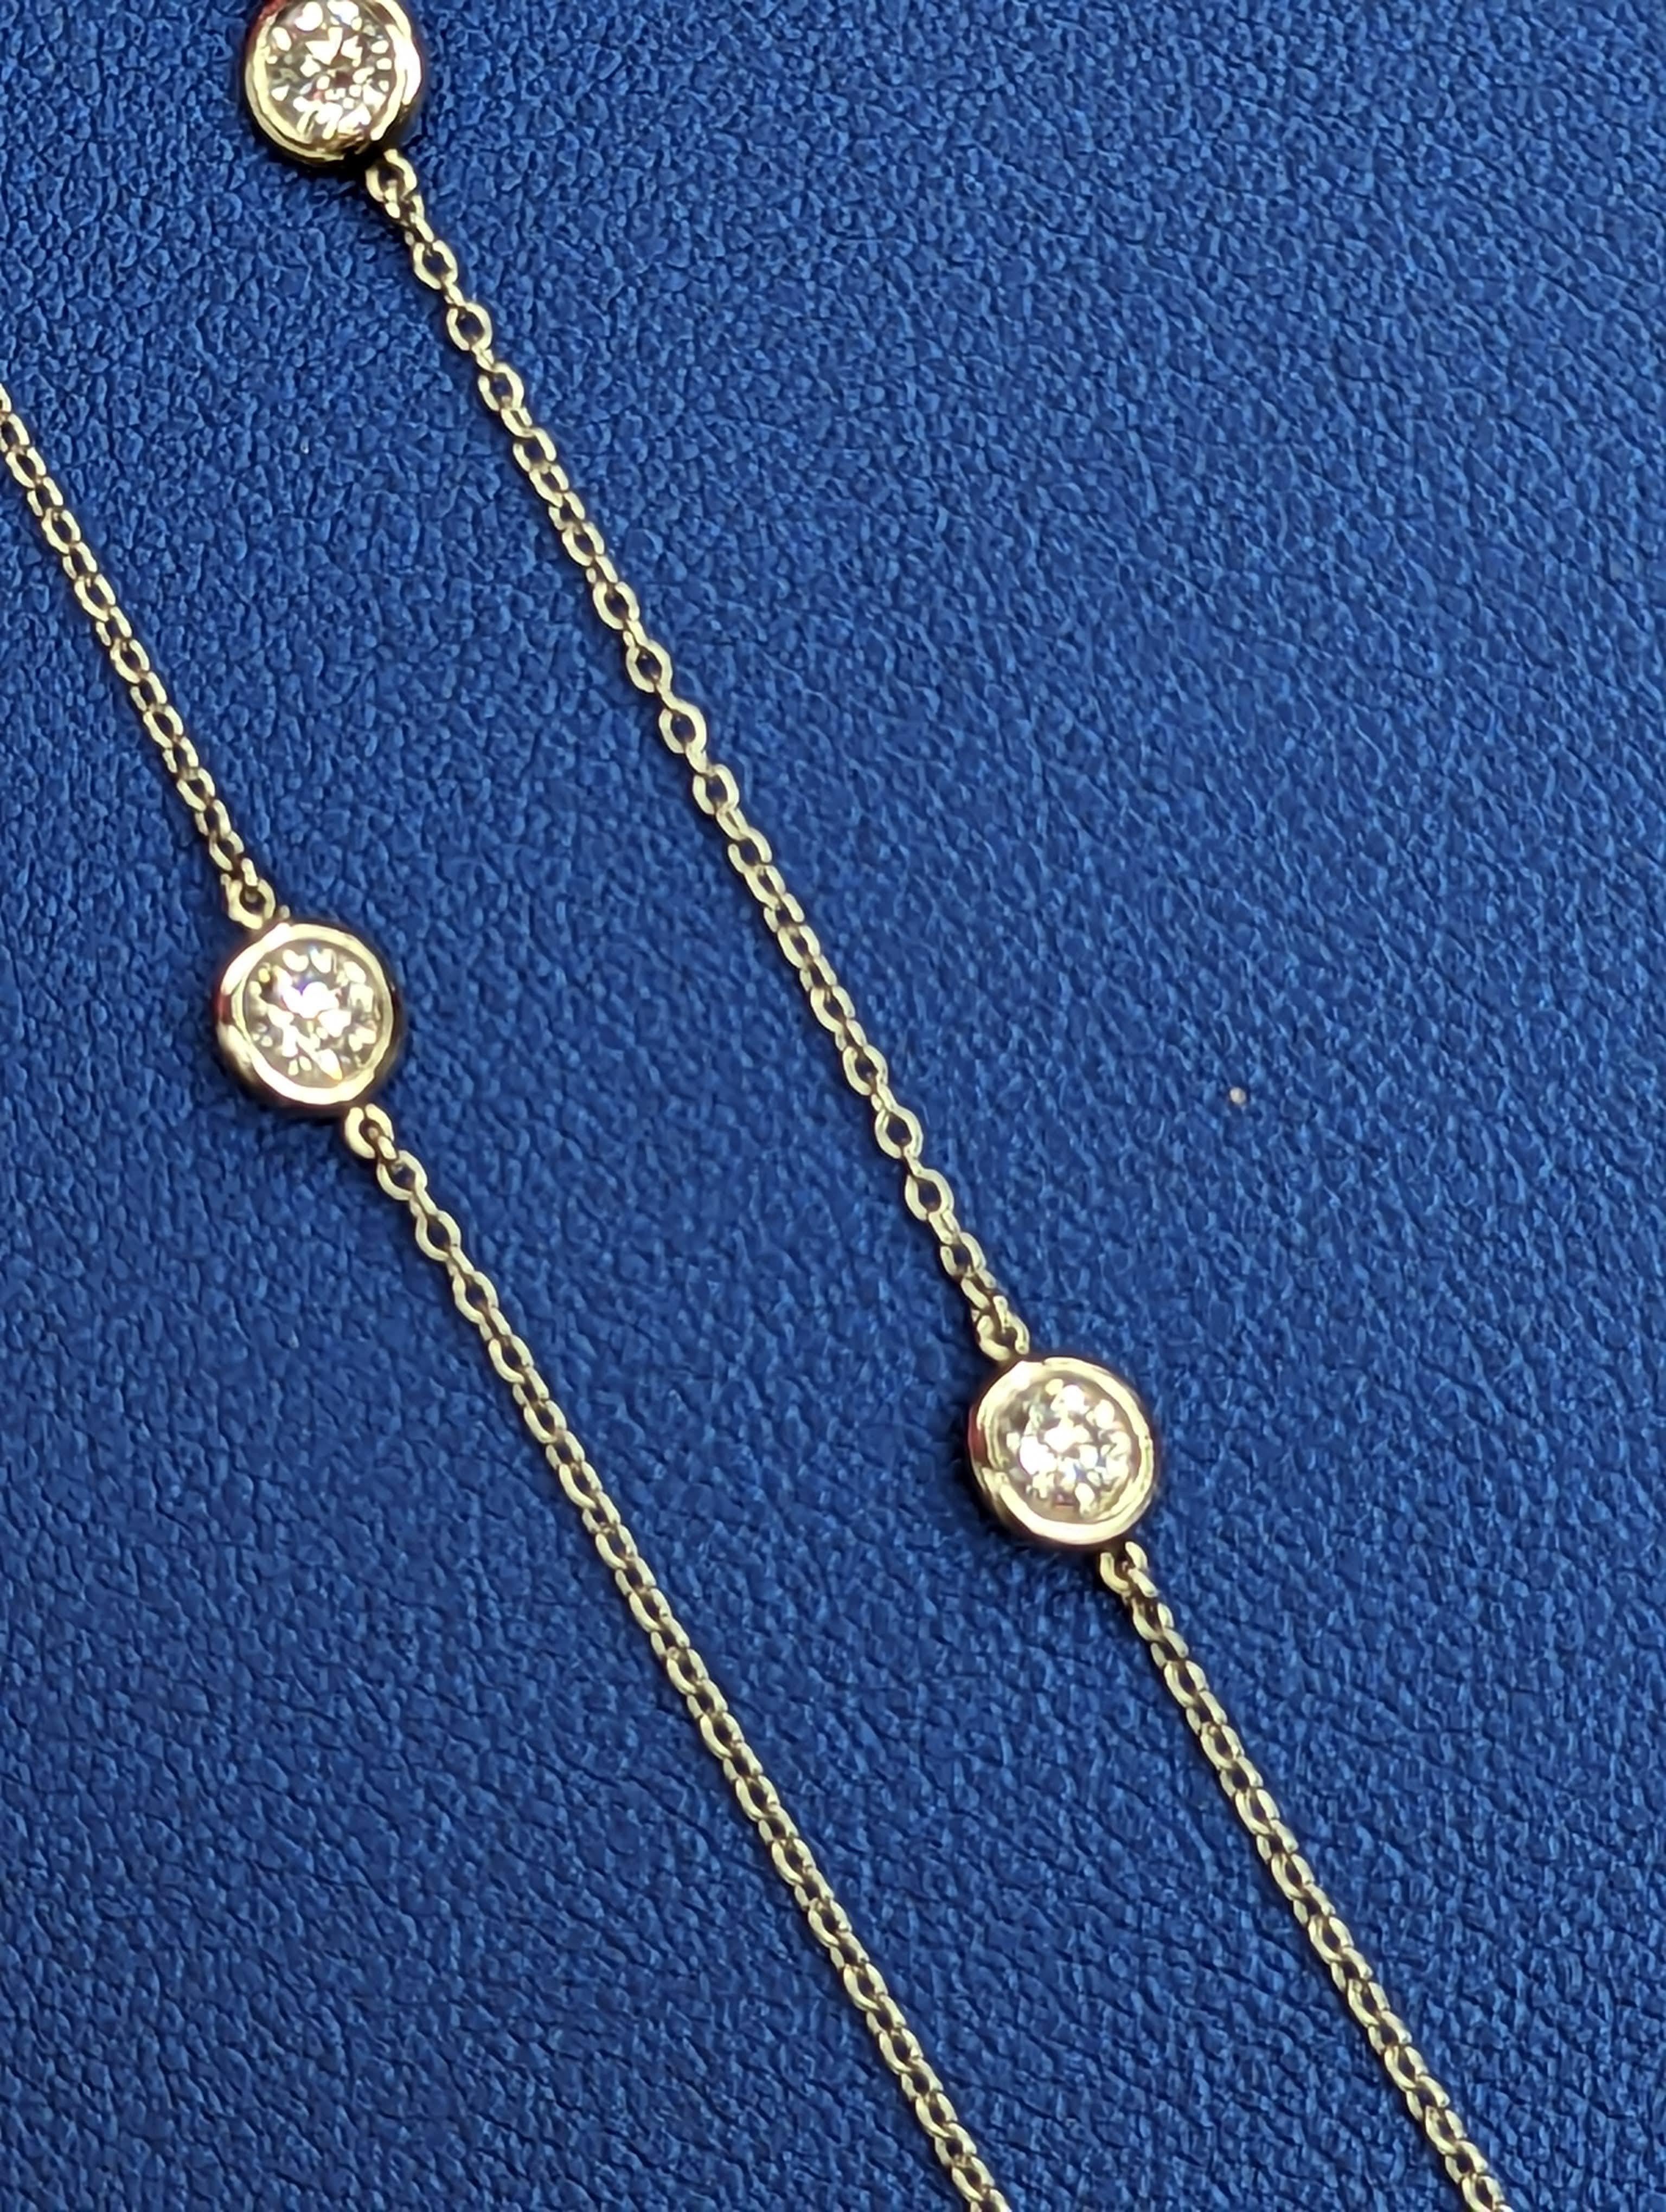 Tiffany & Company Platine 1,54CT Diamants Peretti au mètre
Ce magnifique collier mesure 16 pouces de long et comporte 11 diamants au mètre. Livré avec une boîte bleue Tiffany et un sac intérieur bleu.
Le collier avait été entièrement remis à neuf et